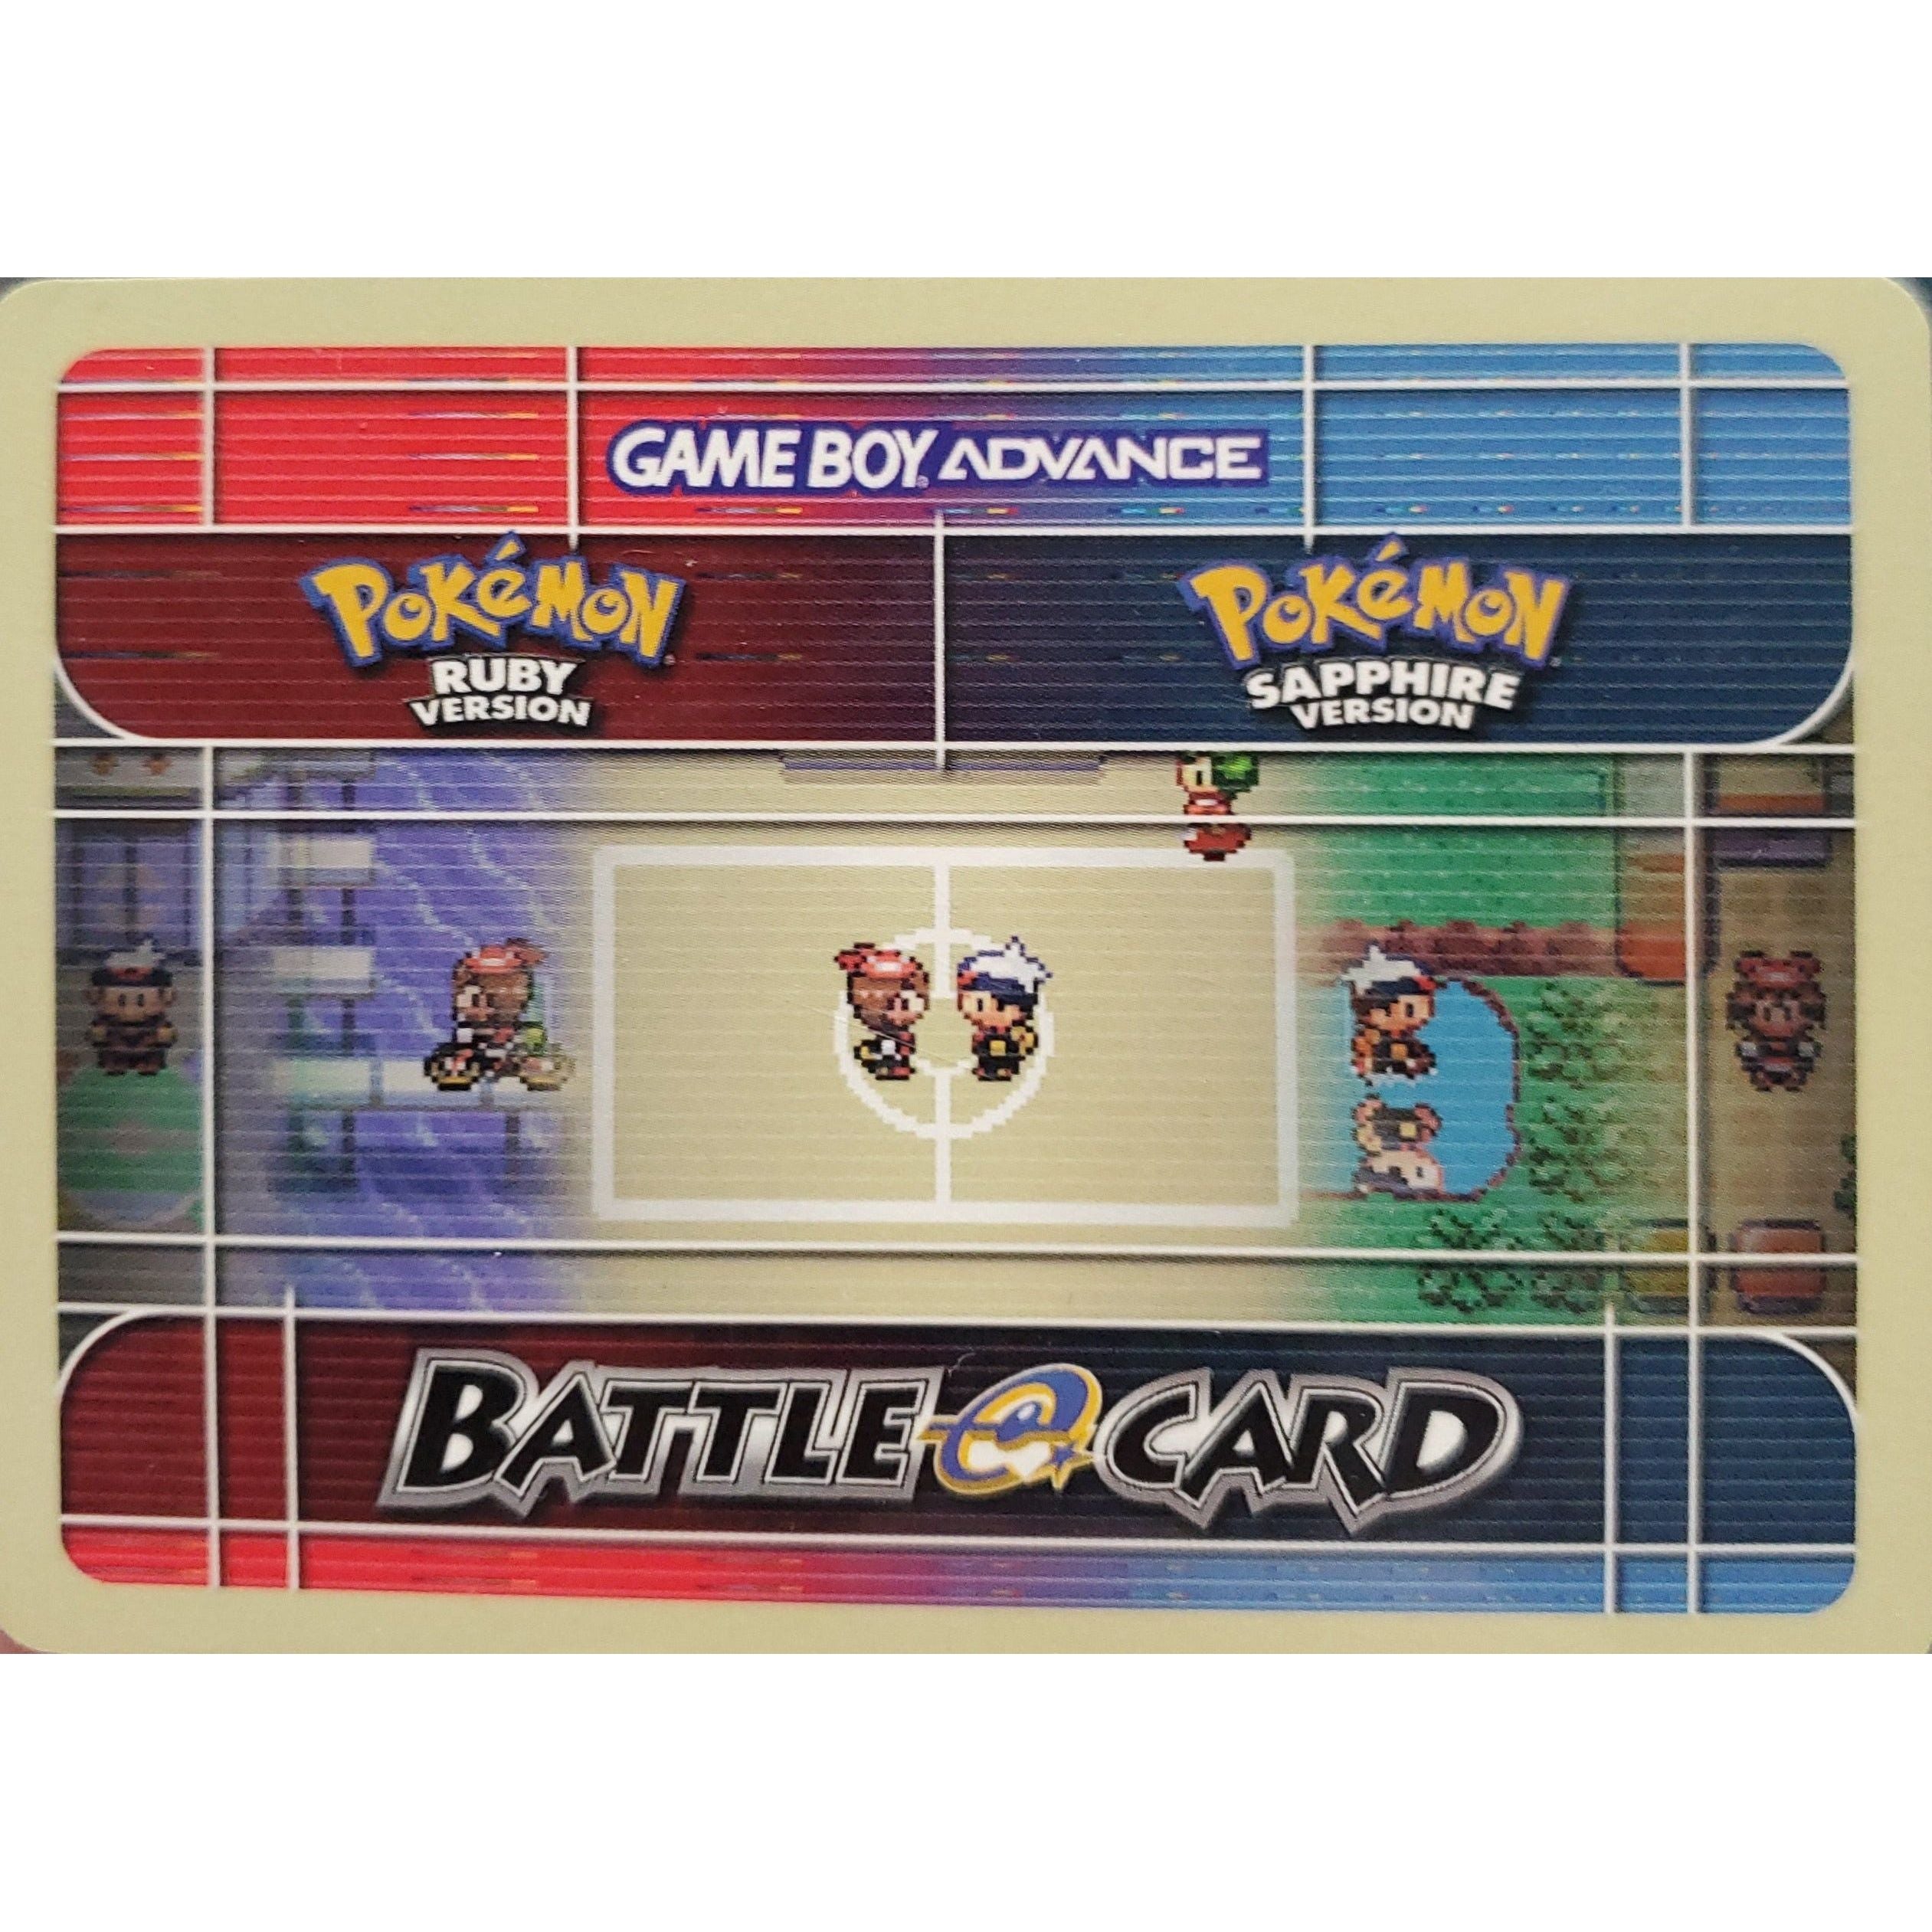 GBA - Pokemon Battle Card - Picnicker Renee